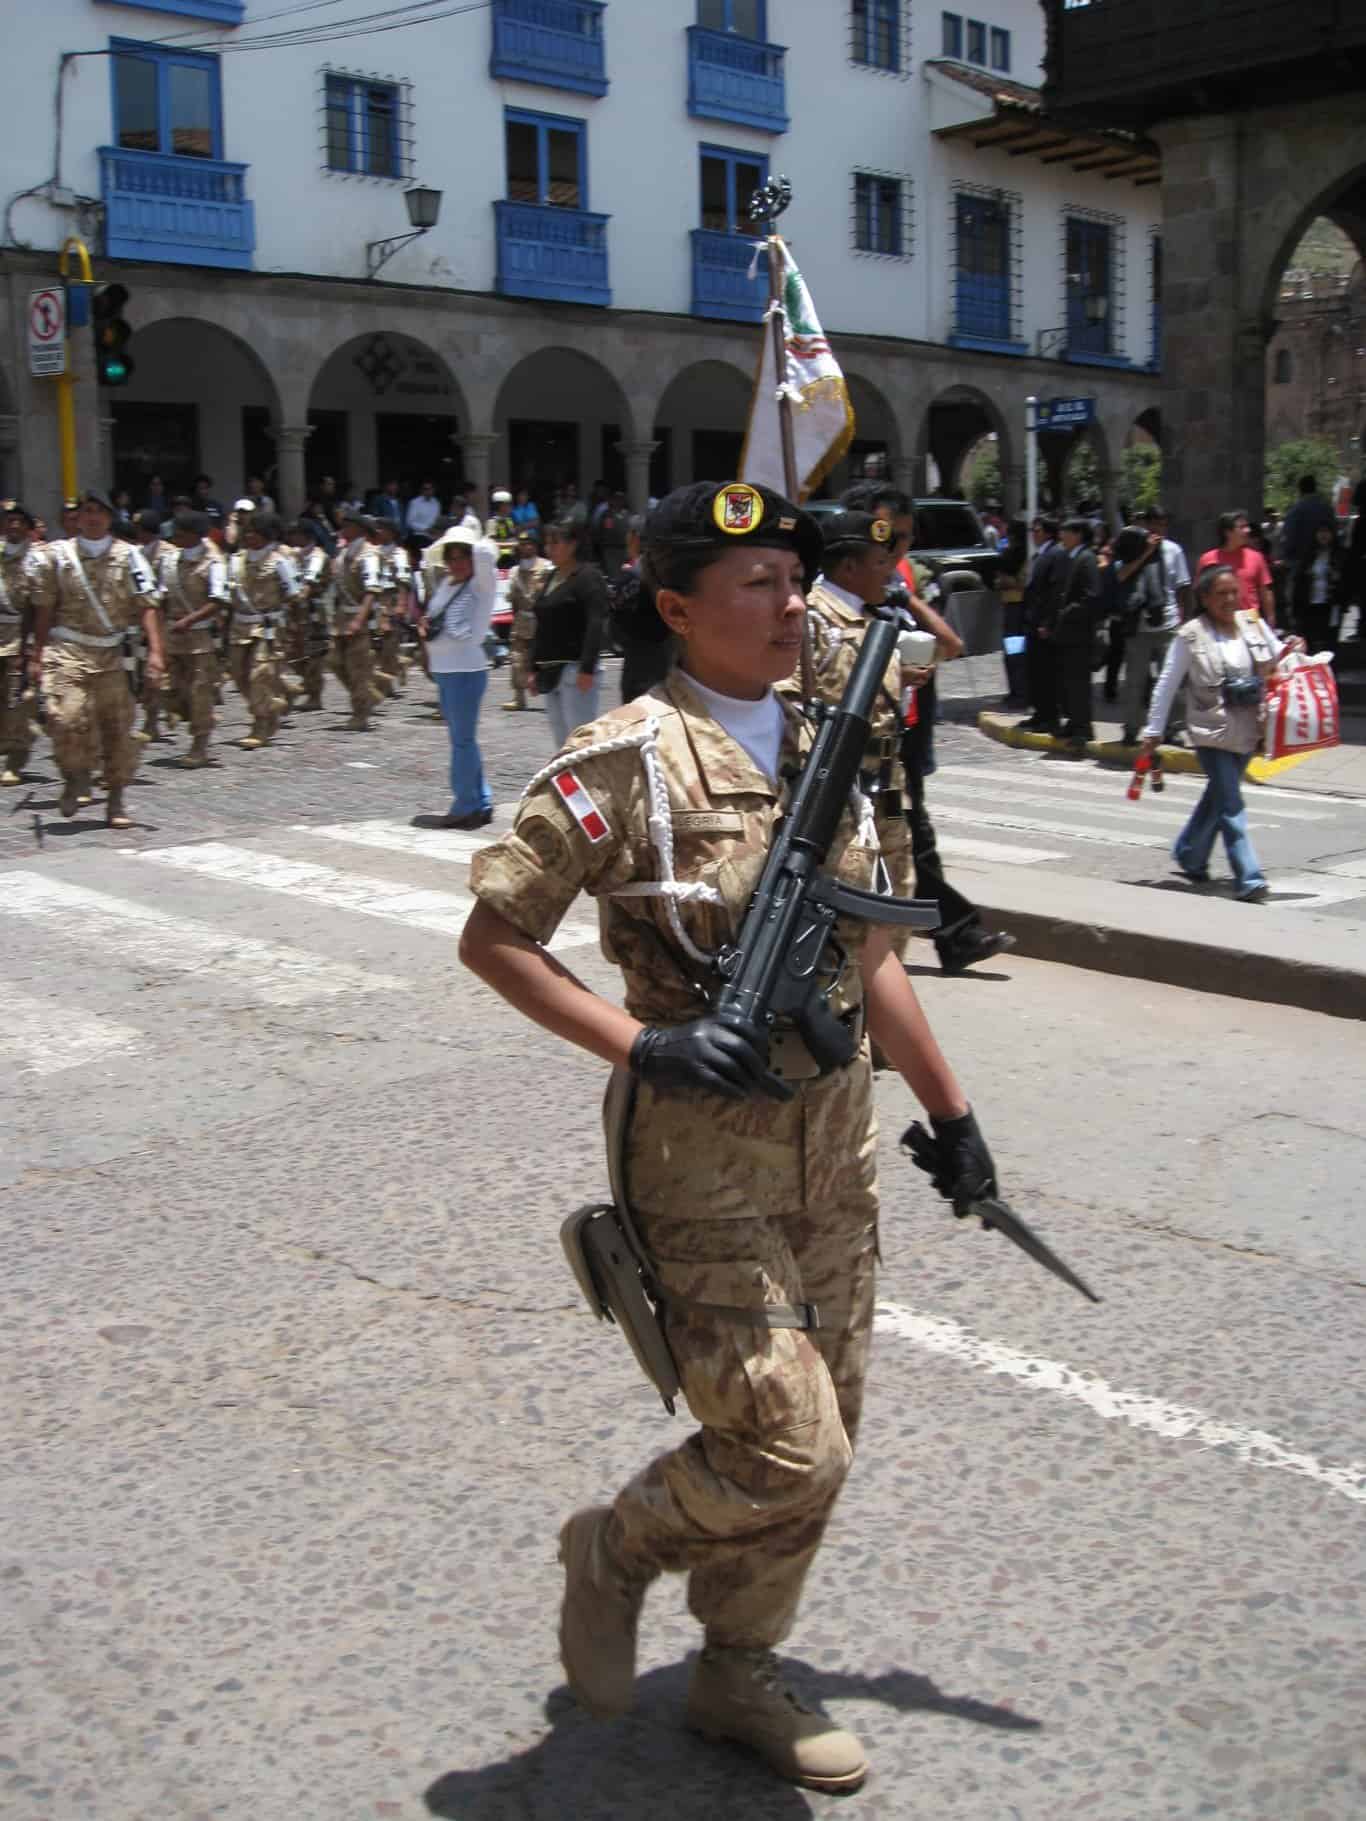 Peru+military | Military parade in Cusco